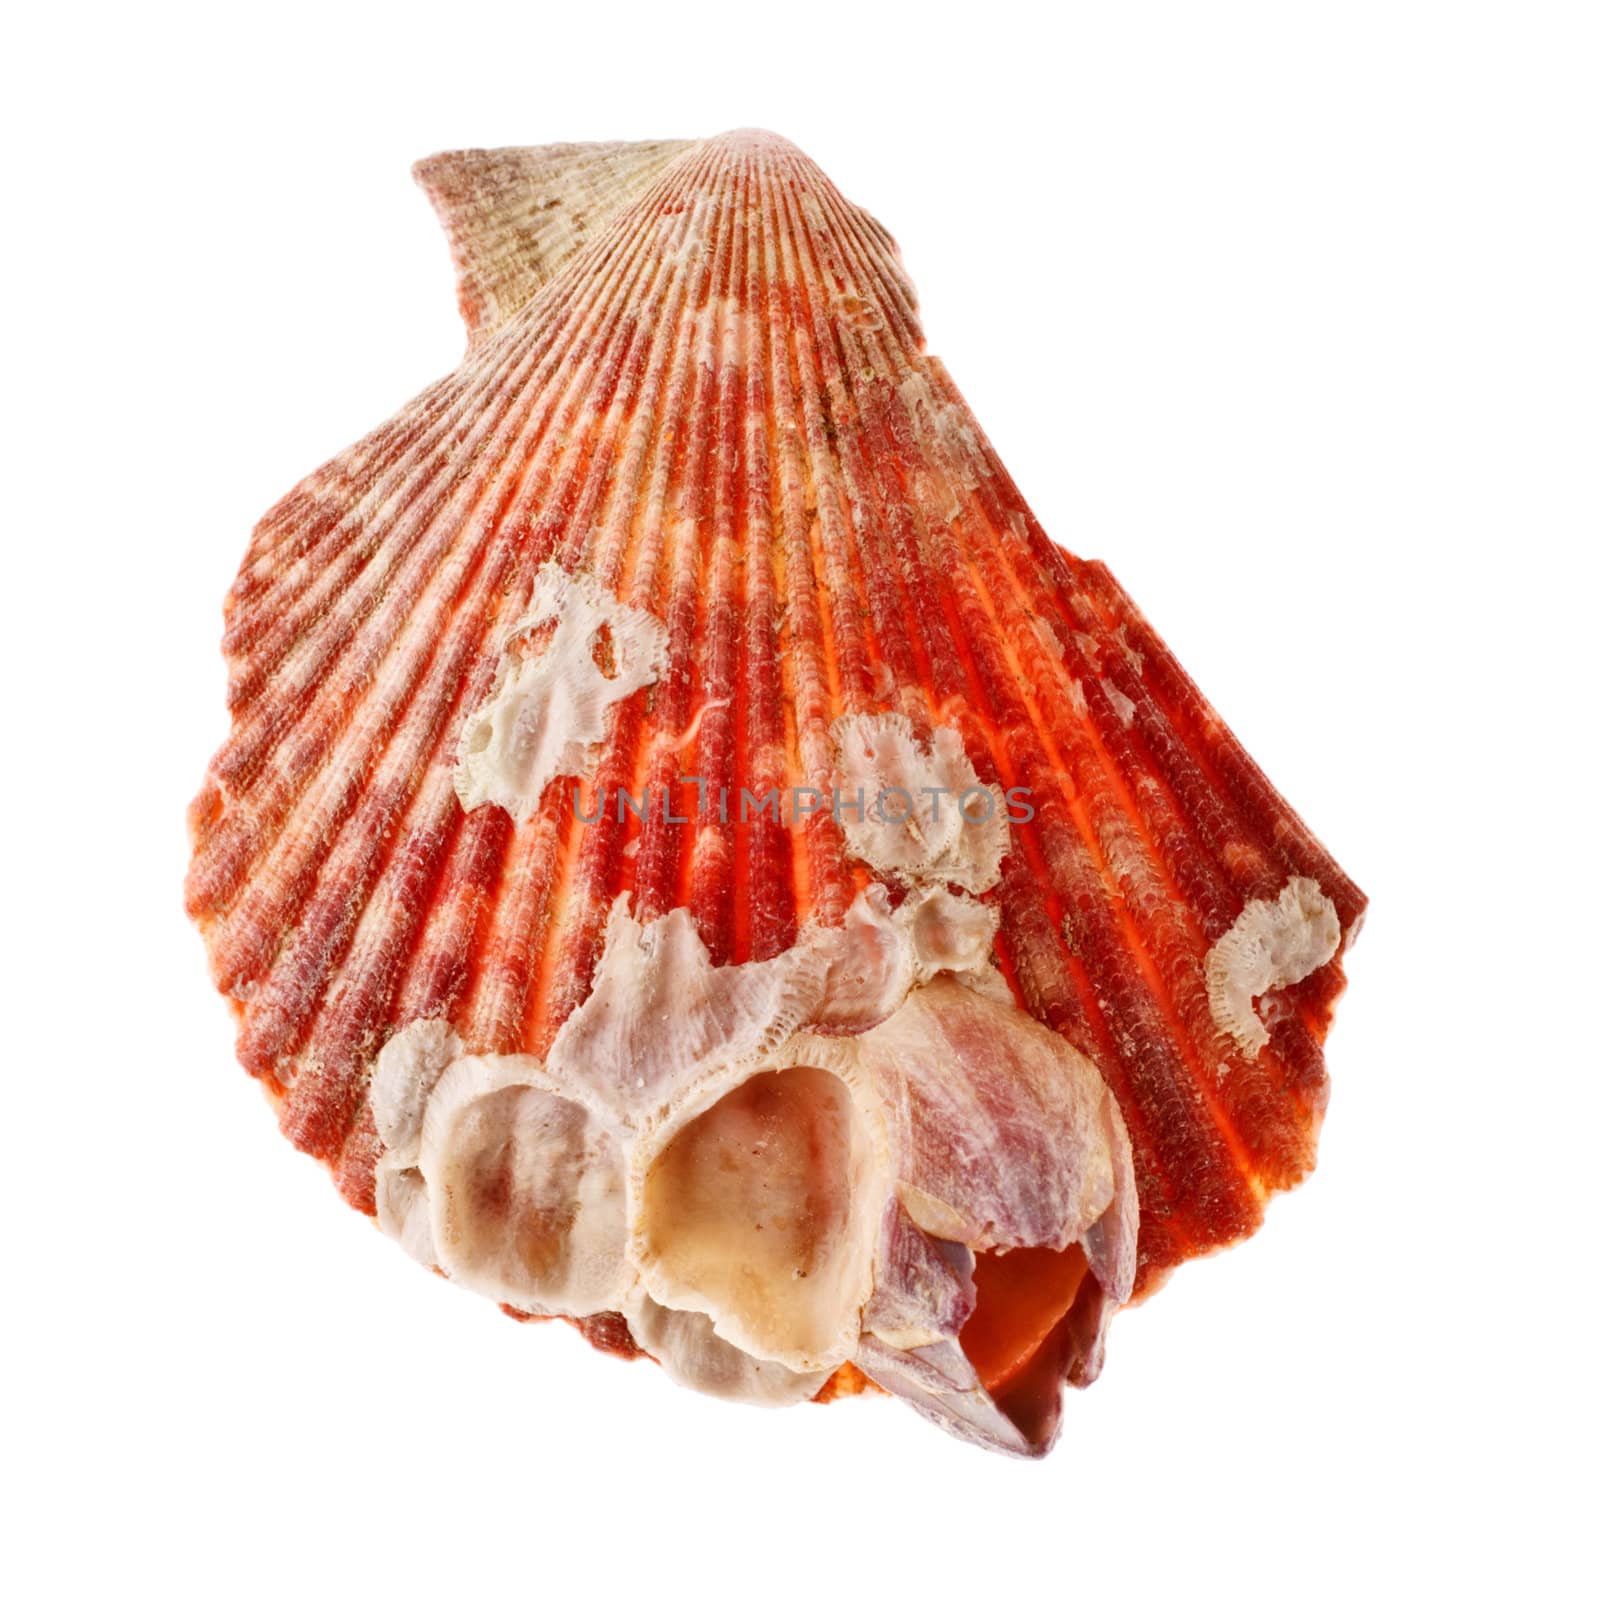 Radial Seashell by petr_malyshev